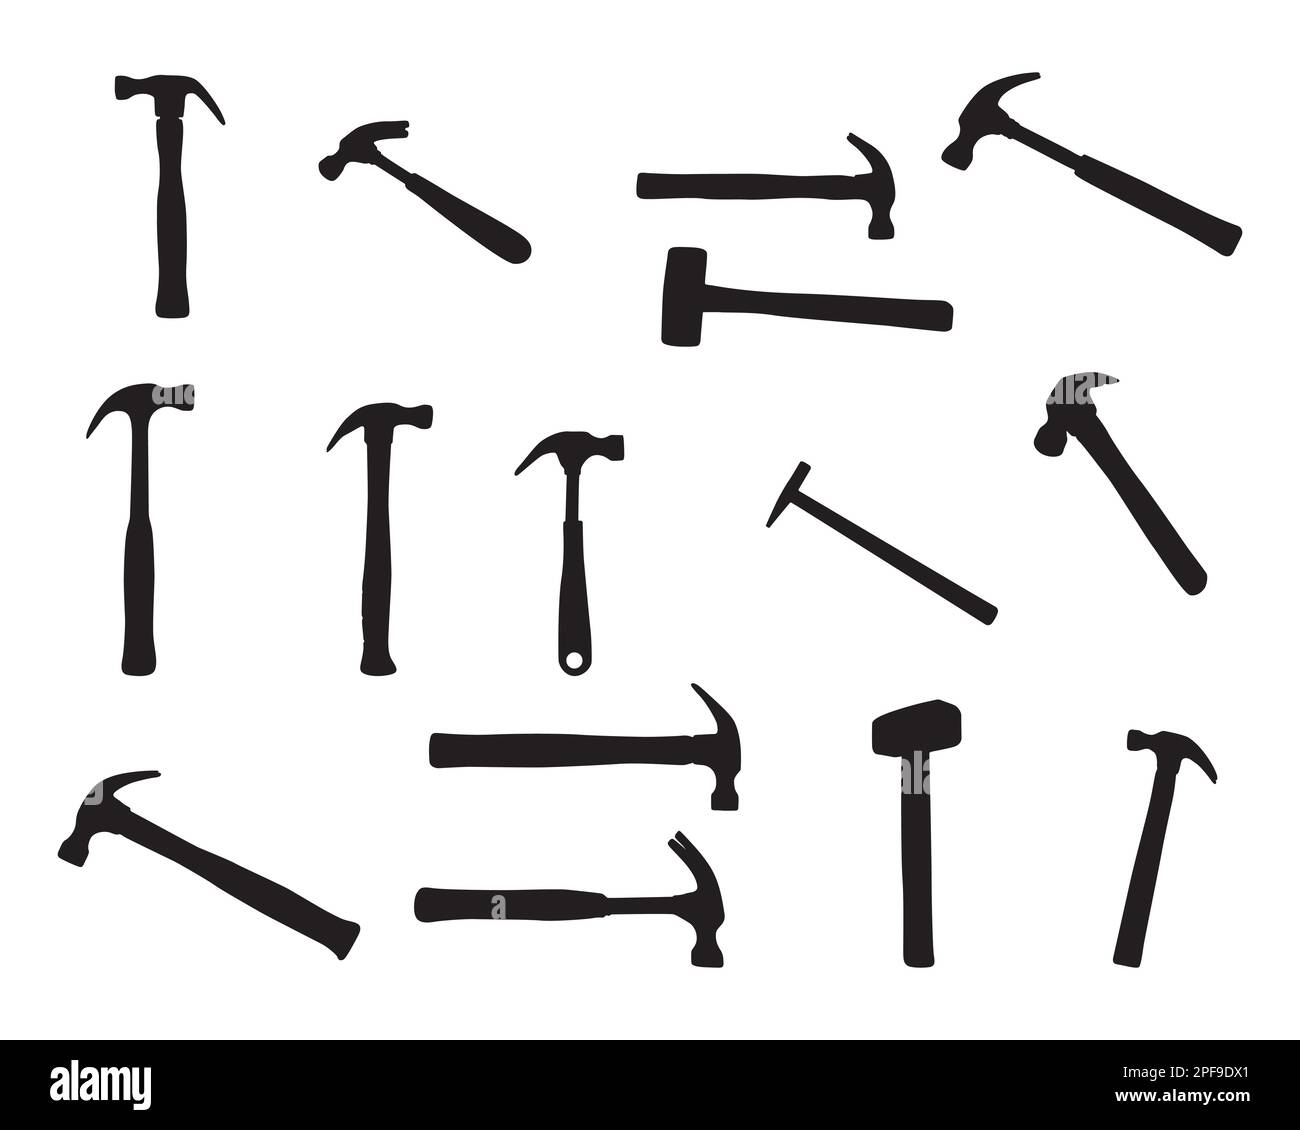 Hammer Silhouettes, Hammer silhouette set, Hammer SVG, Hammer tools vector Stock Vector